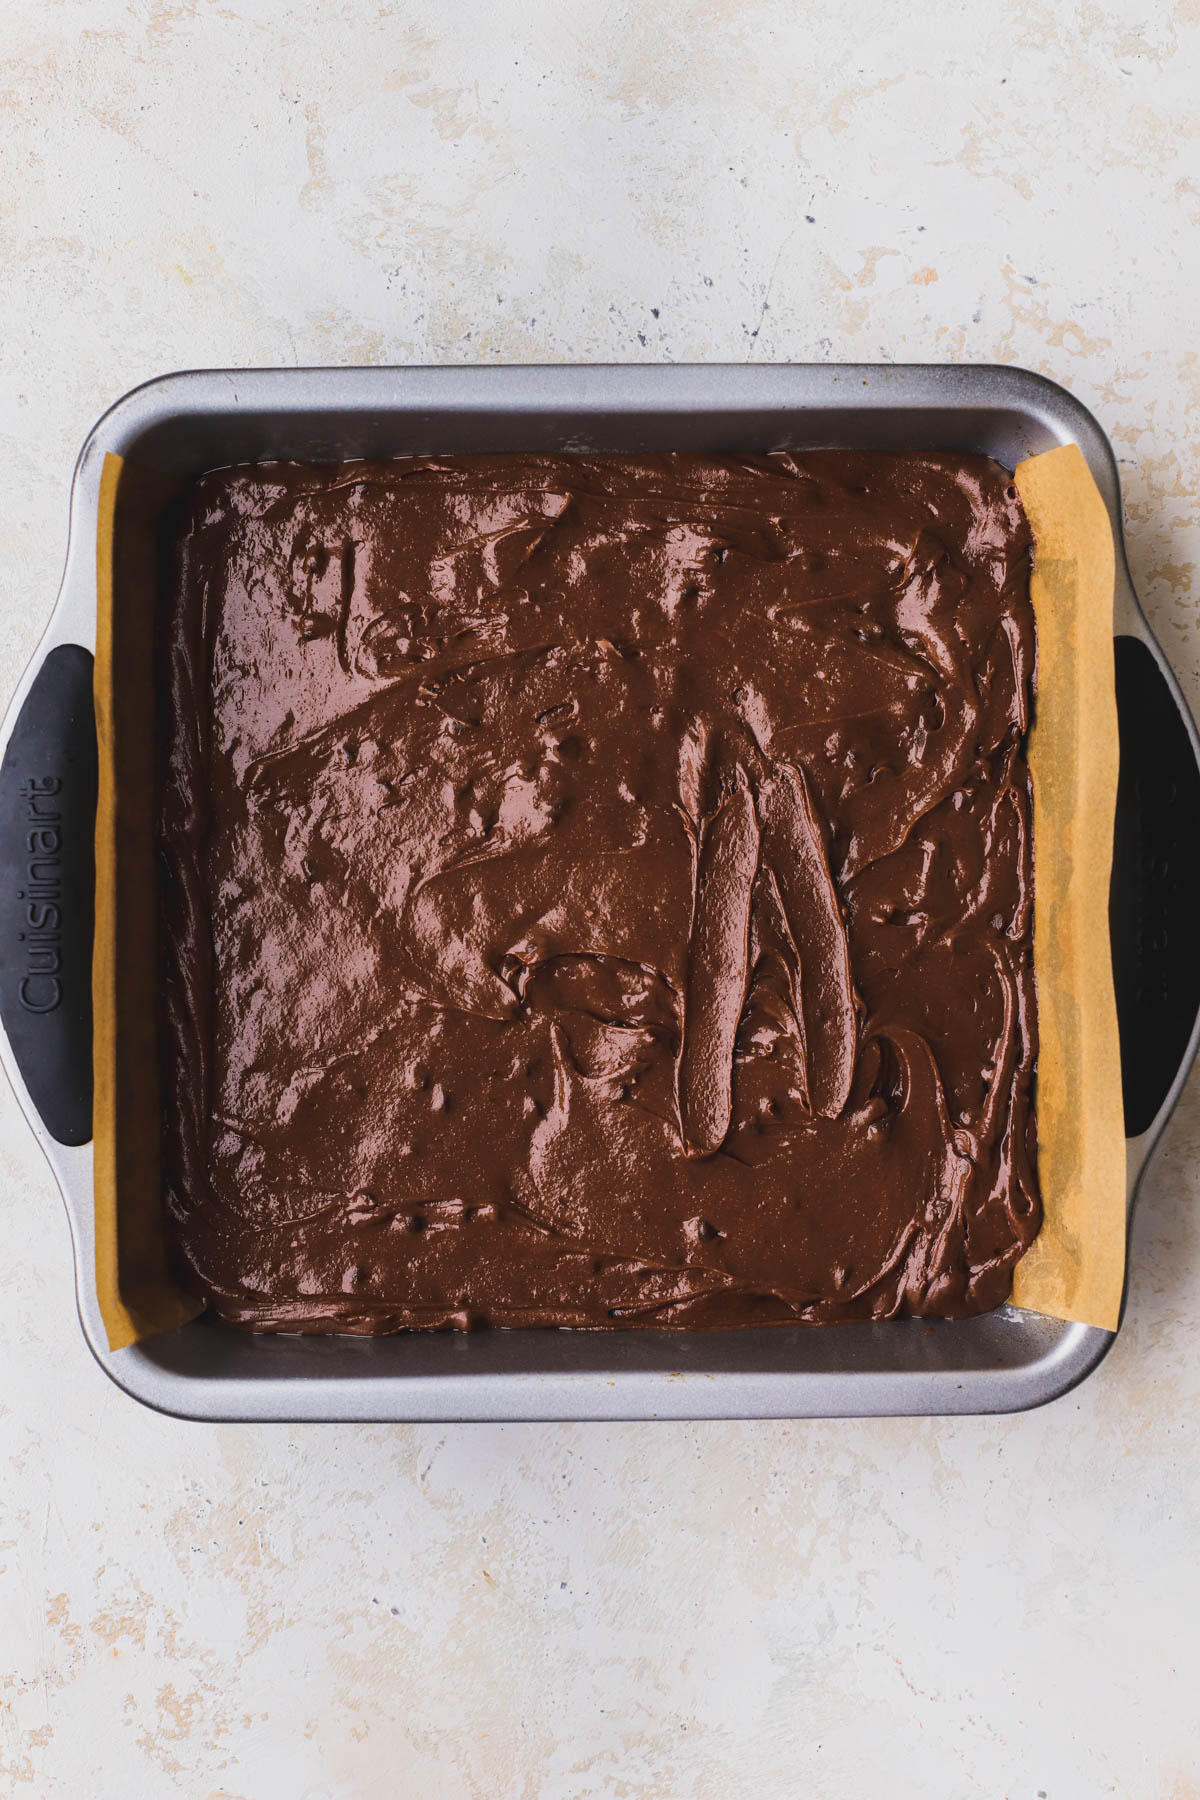 Brownie batter inside greased 8x8 baking pan. 